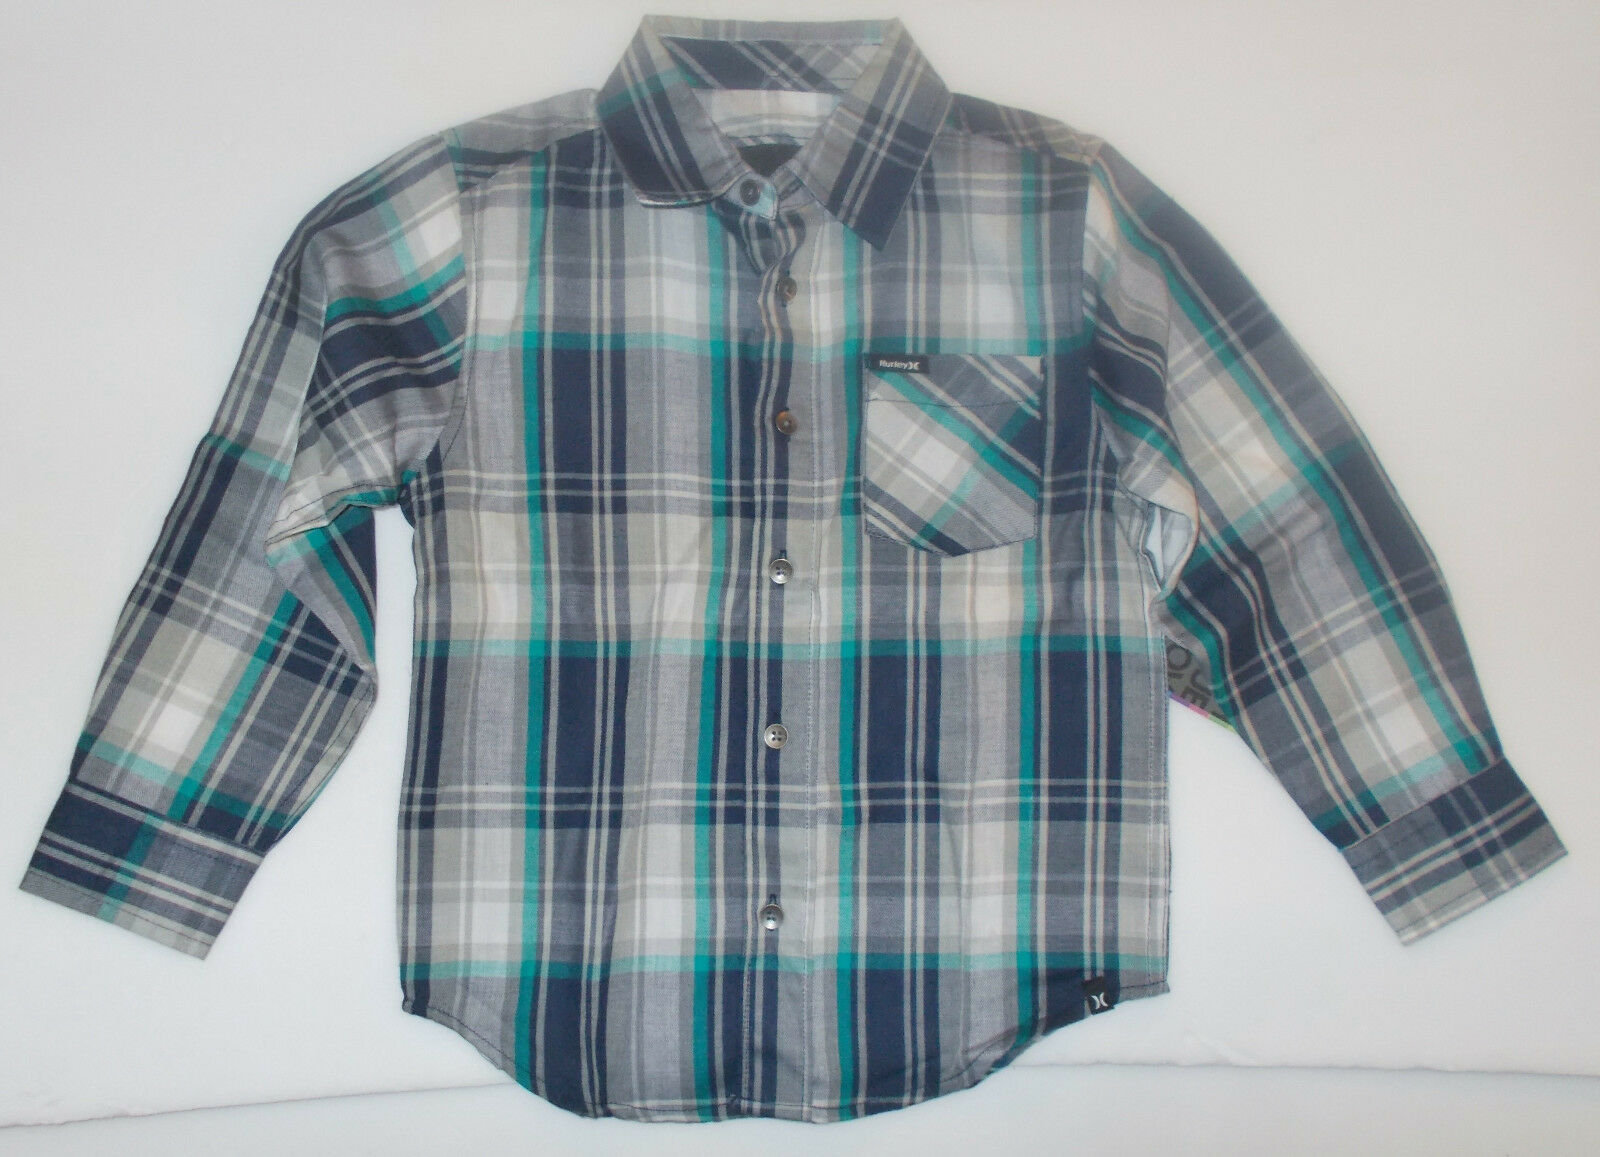 Hurley Boys Long Sleeve Plaid Shirt Gray Black Blue Sizes 4,  NWT - $13.59